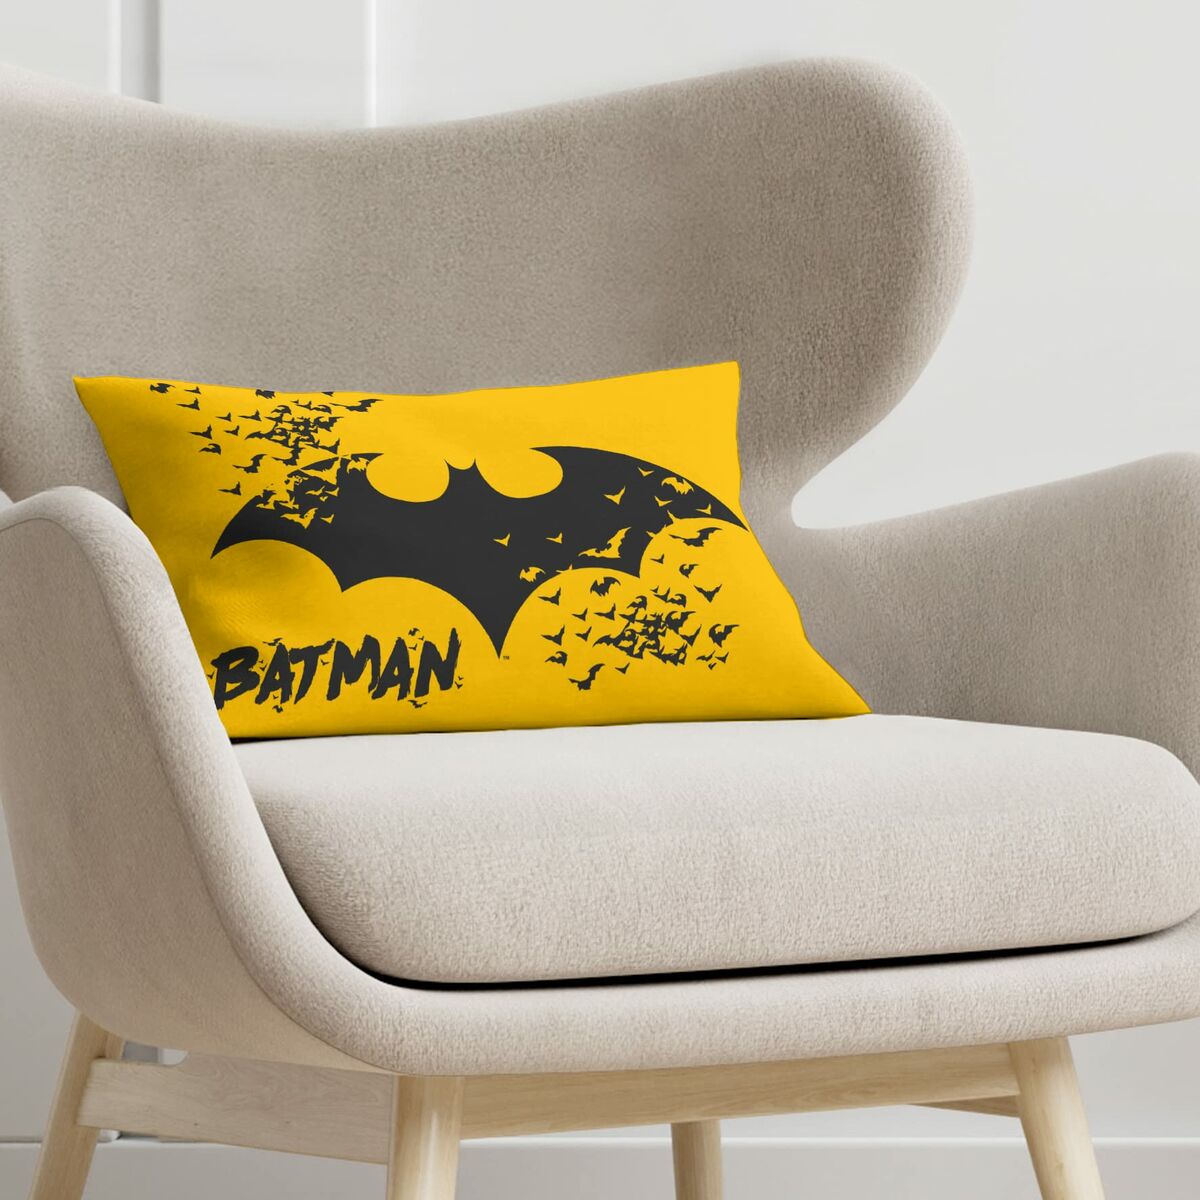 Housse de coussin Batman Batman Comix 1C Jaune 30 x 50 cm